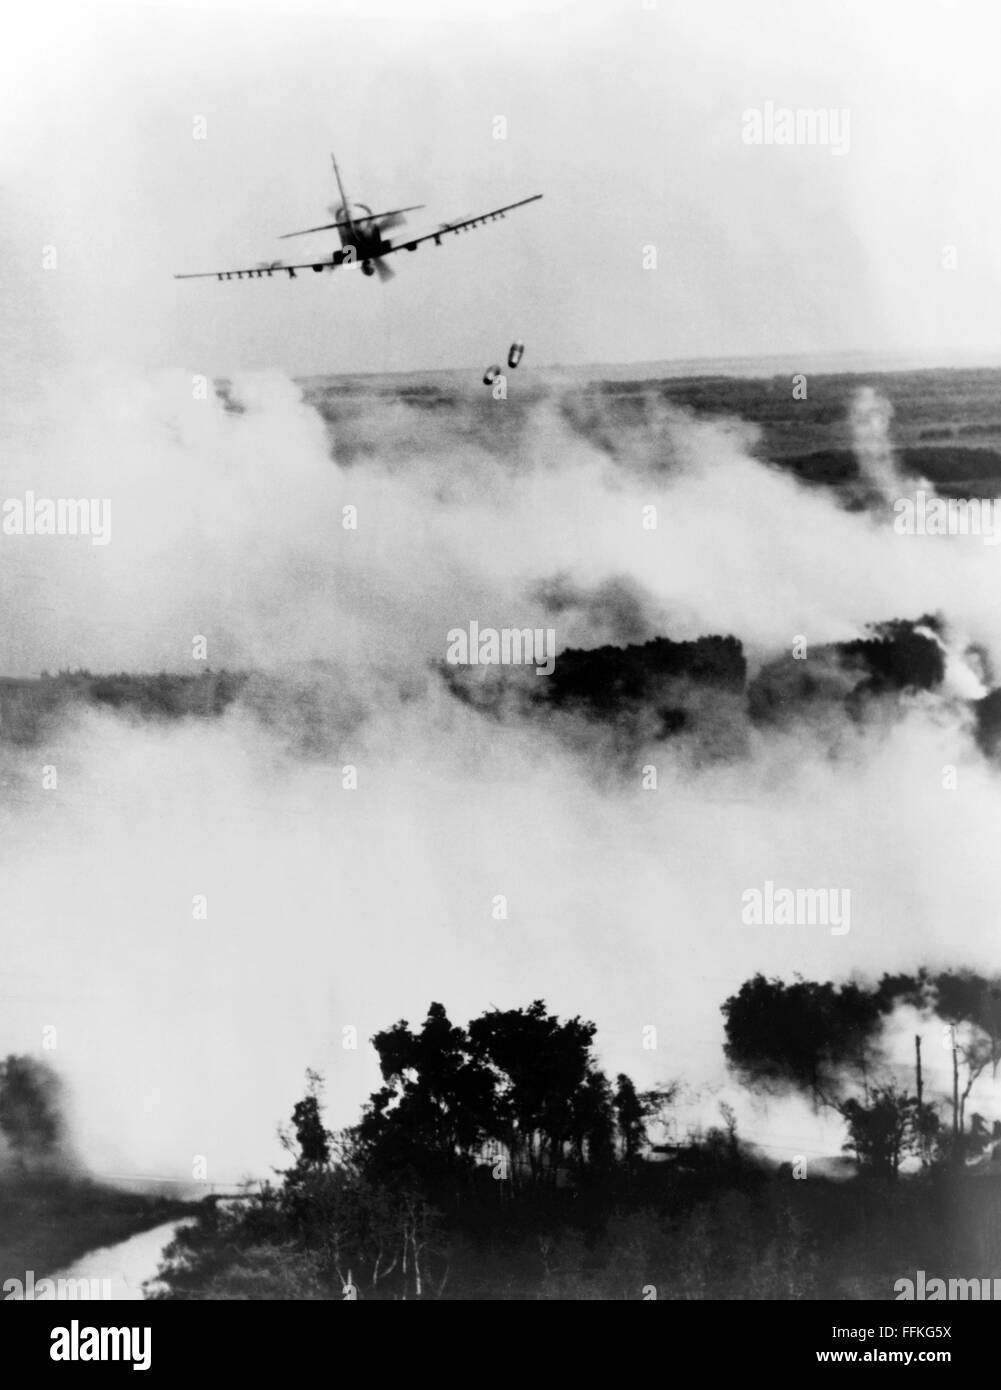 Vietnam-Krieg. Vietnamesischen Luftwaffe A-1E Skyraider Bombardierung ein Vietcong-Versteck in der Nähe von Cantho, Südvietnam während des Vietnam-Krieges. Foto c.1967 USAF. Stockfoto